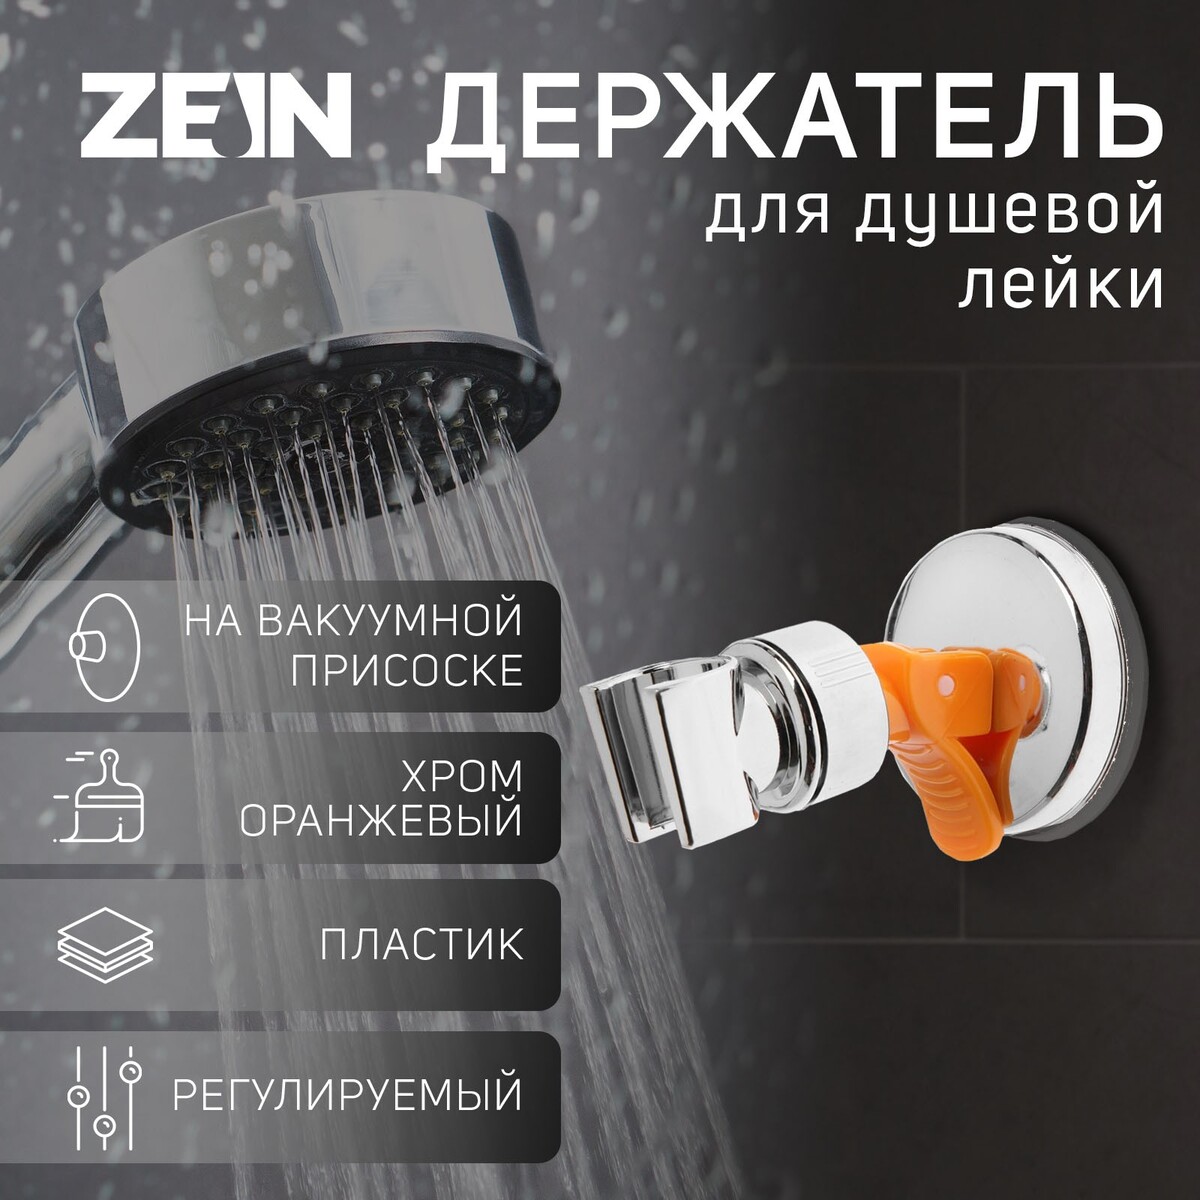 Держатель для душевой лейки zein z73, на вакуумной присоске, пластик, хром/оранжевый держатель для душевой лейки zein z90 регулируемый пластик хром